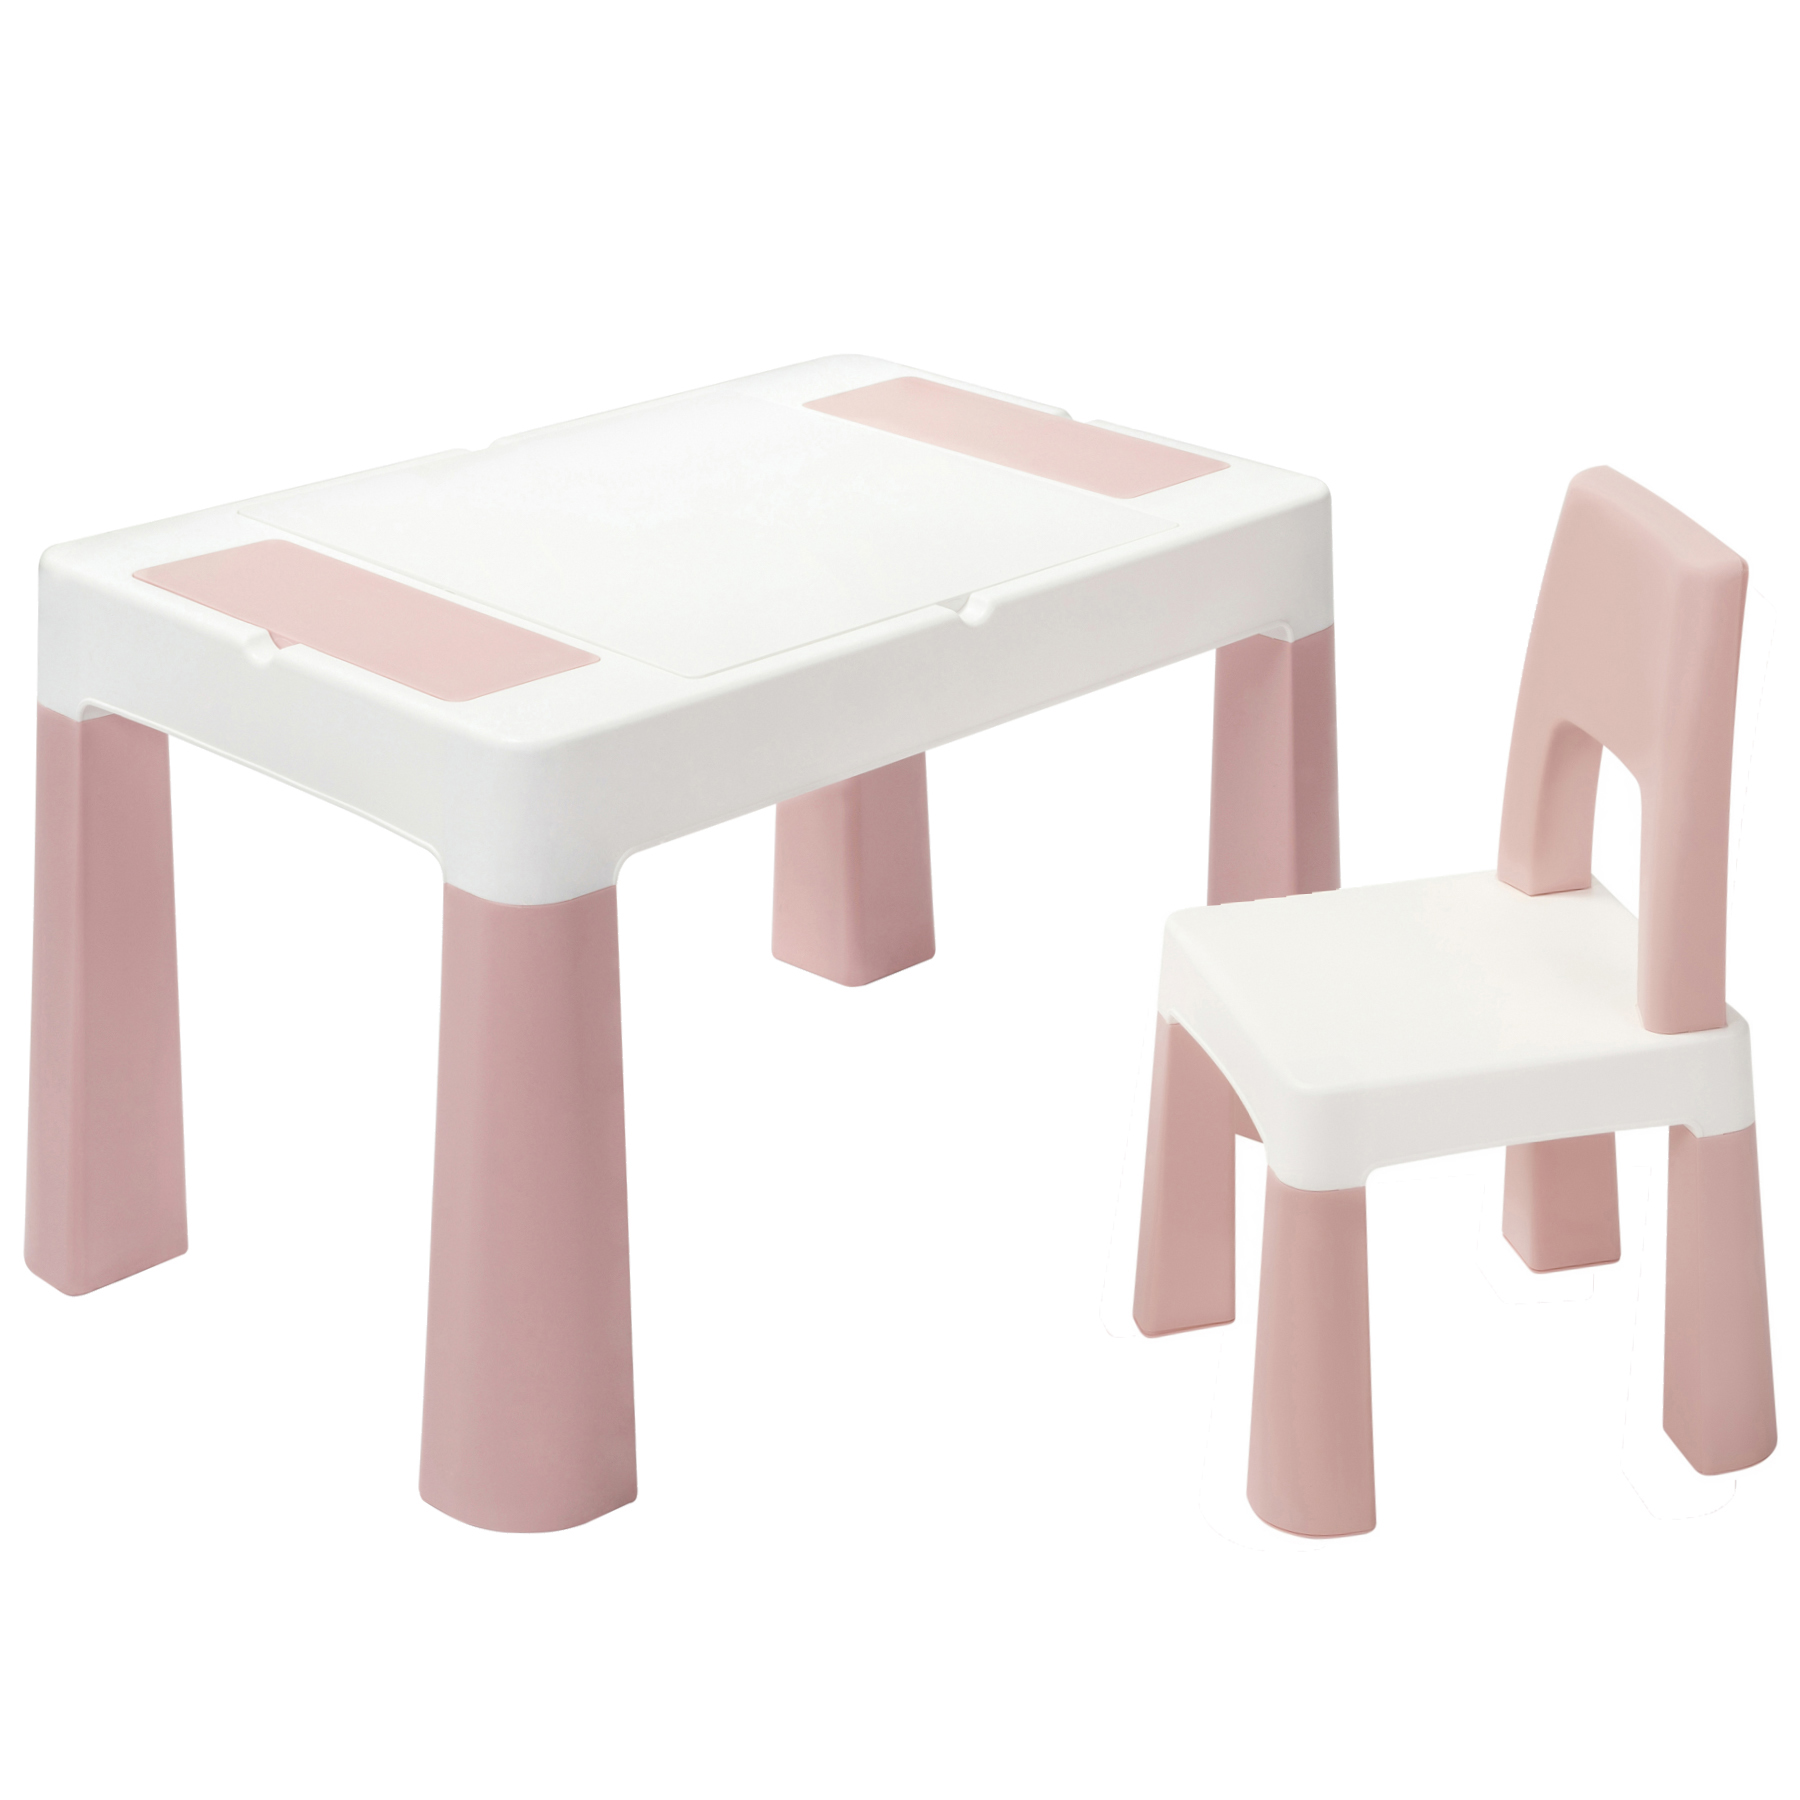 Стол и стульчик Lamosa изготовлены из прочного и безвредного пластика, который легко очищается от загрязнений — мебель можно установить и в помещении, и на улице.